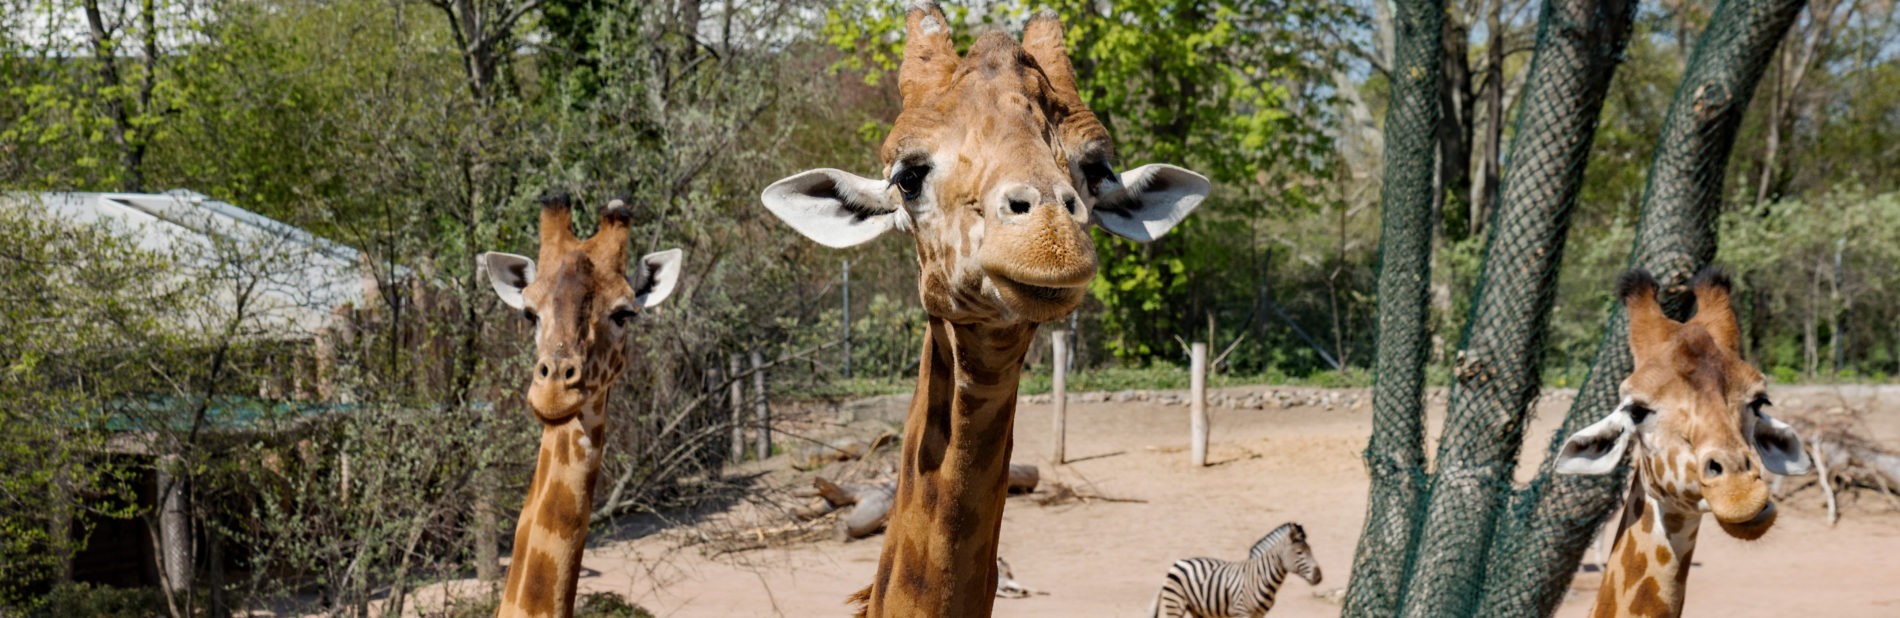 Kordofan-Giraffen